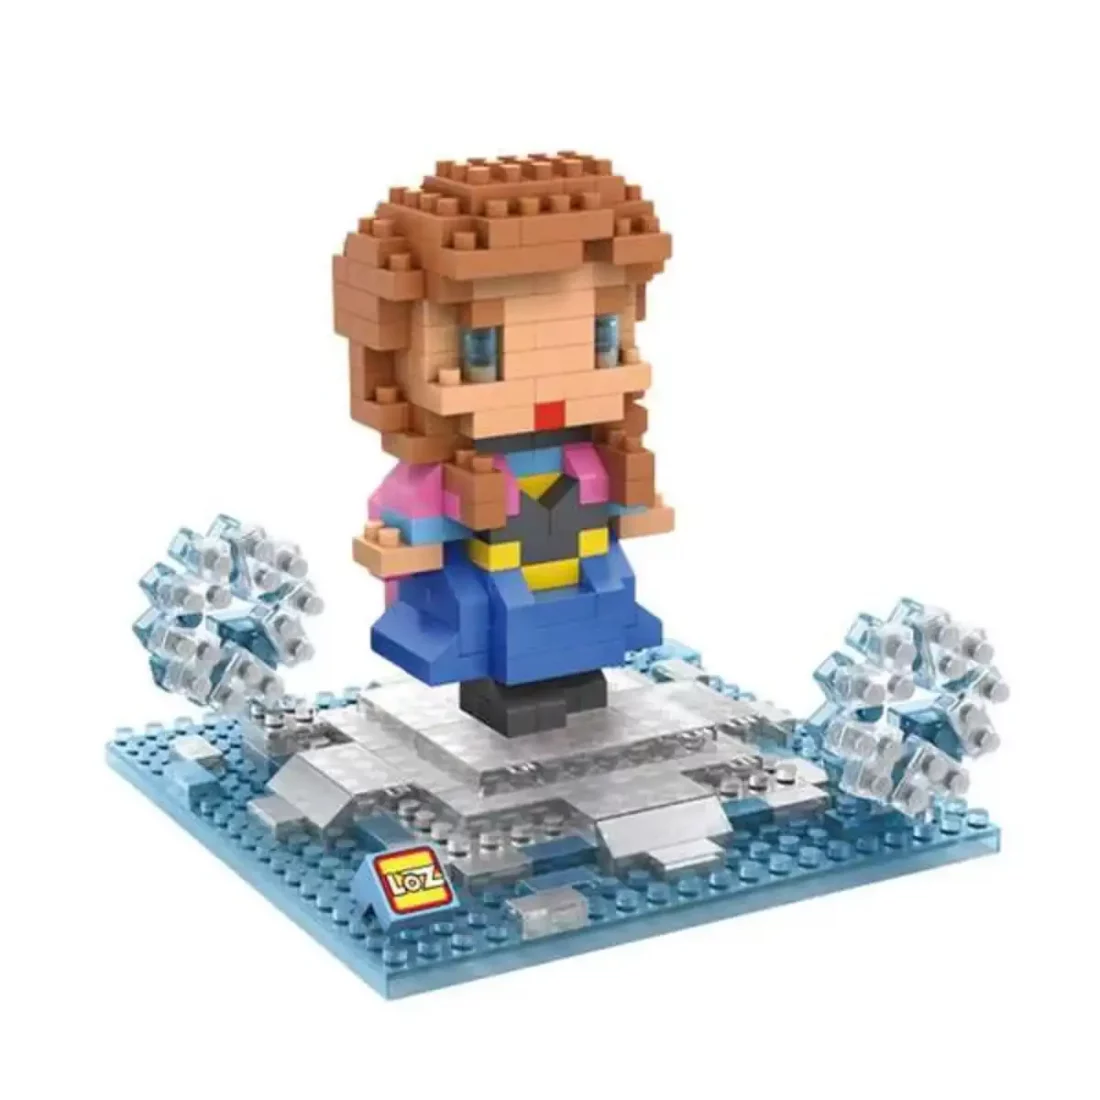 ana frozen juguete regalo niña pixel construcciones blocks